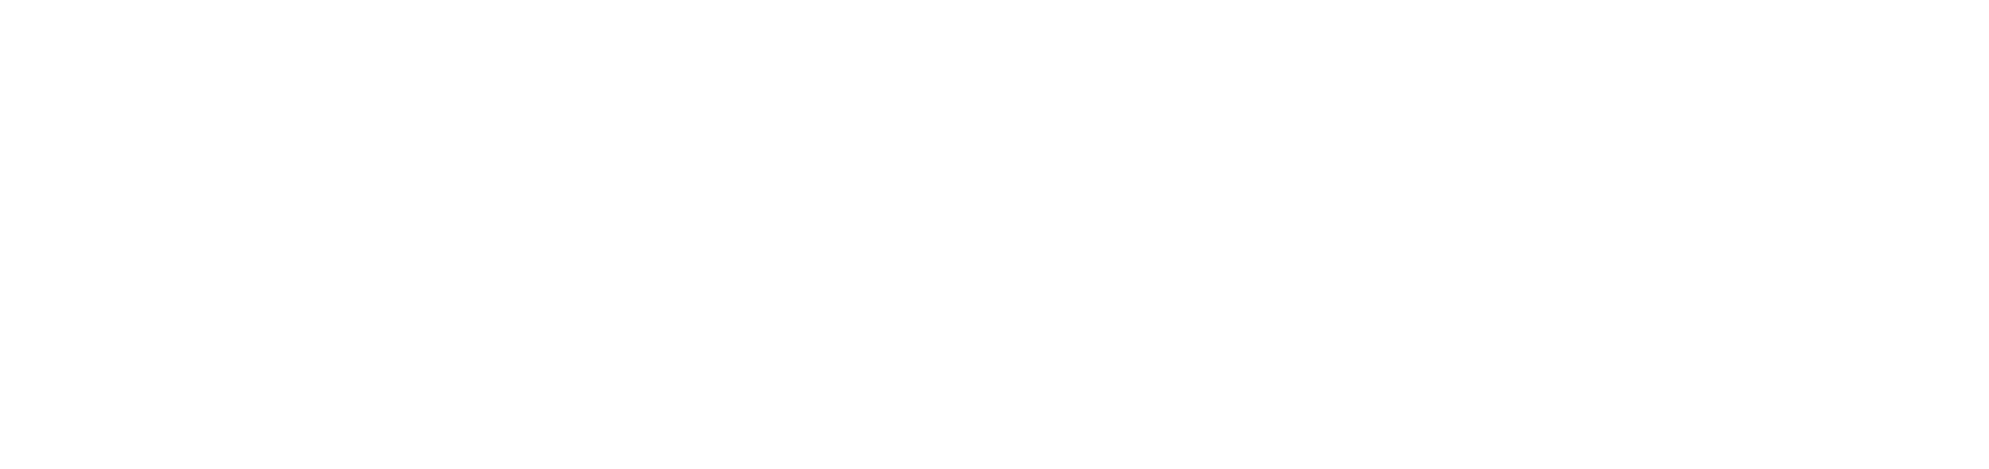 medtronic-logo-transparent centered